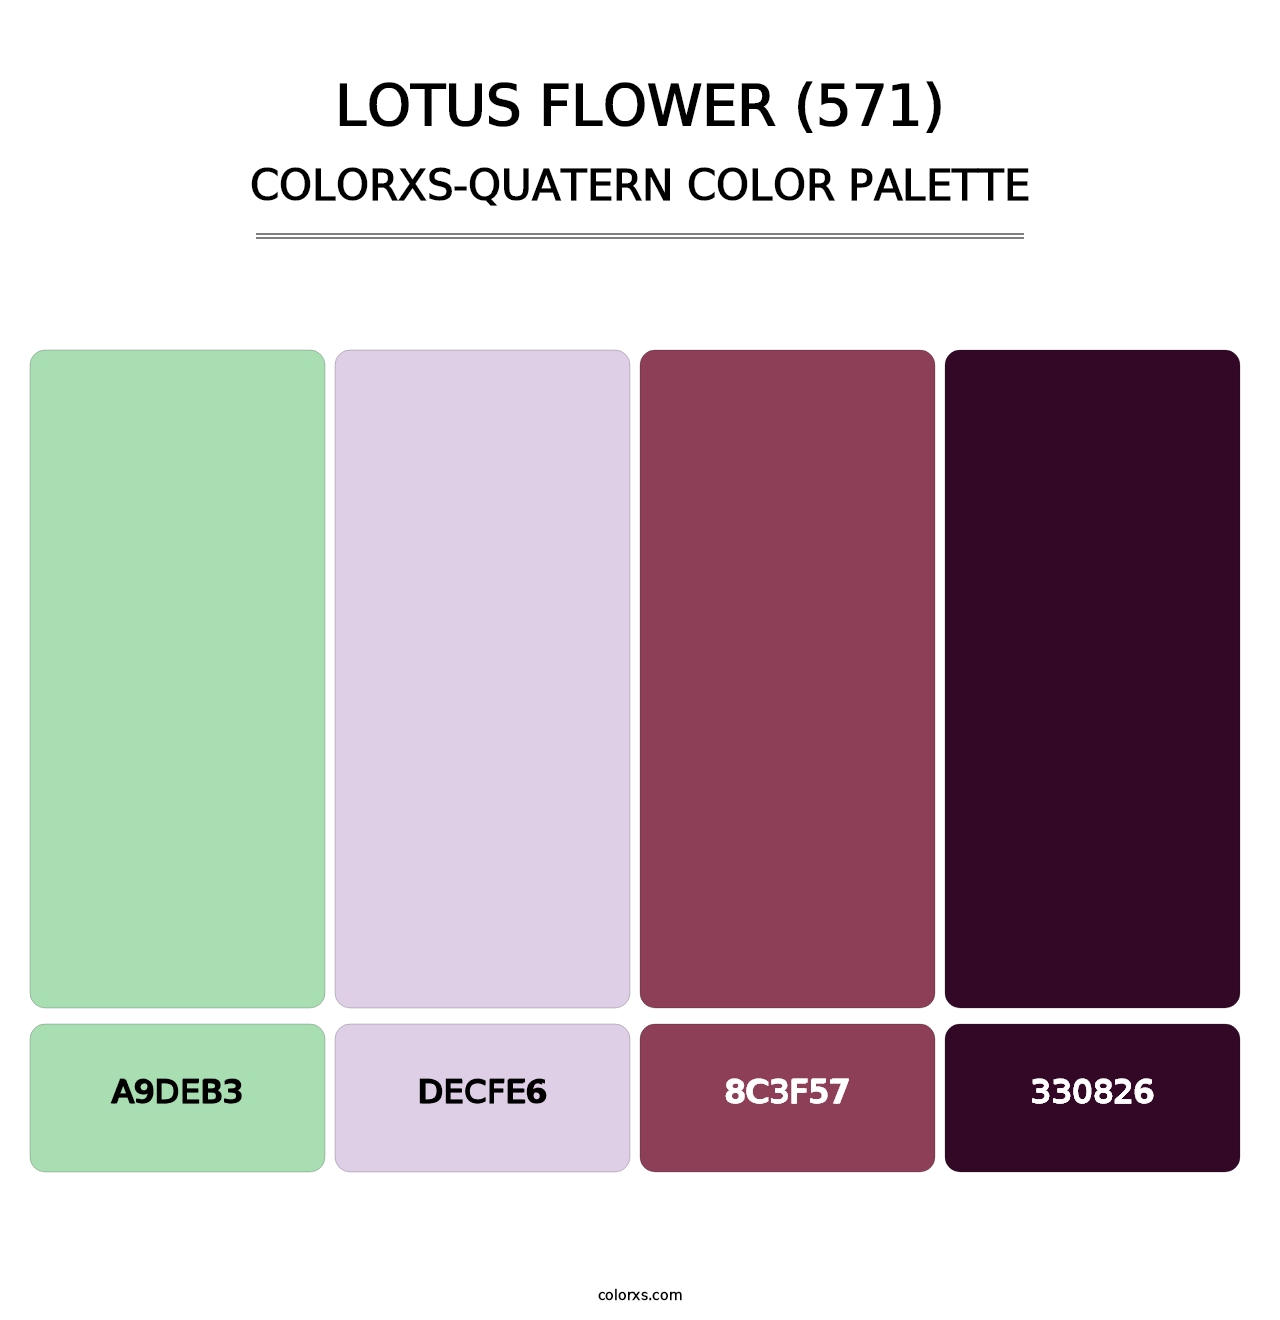 Lotus Flower (571) - Colorxs Quatern Palette